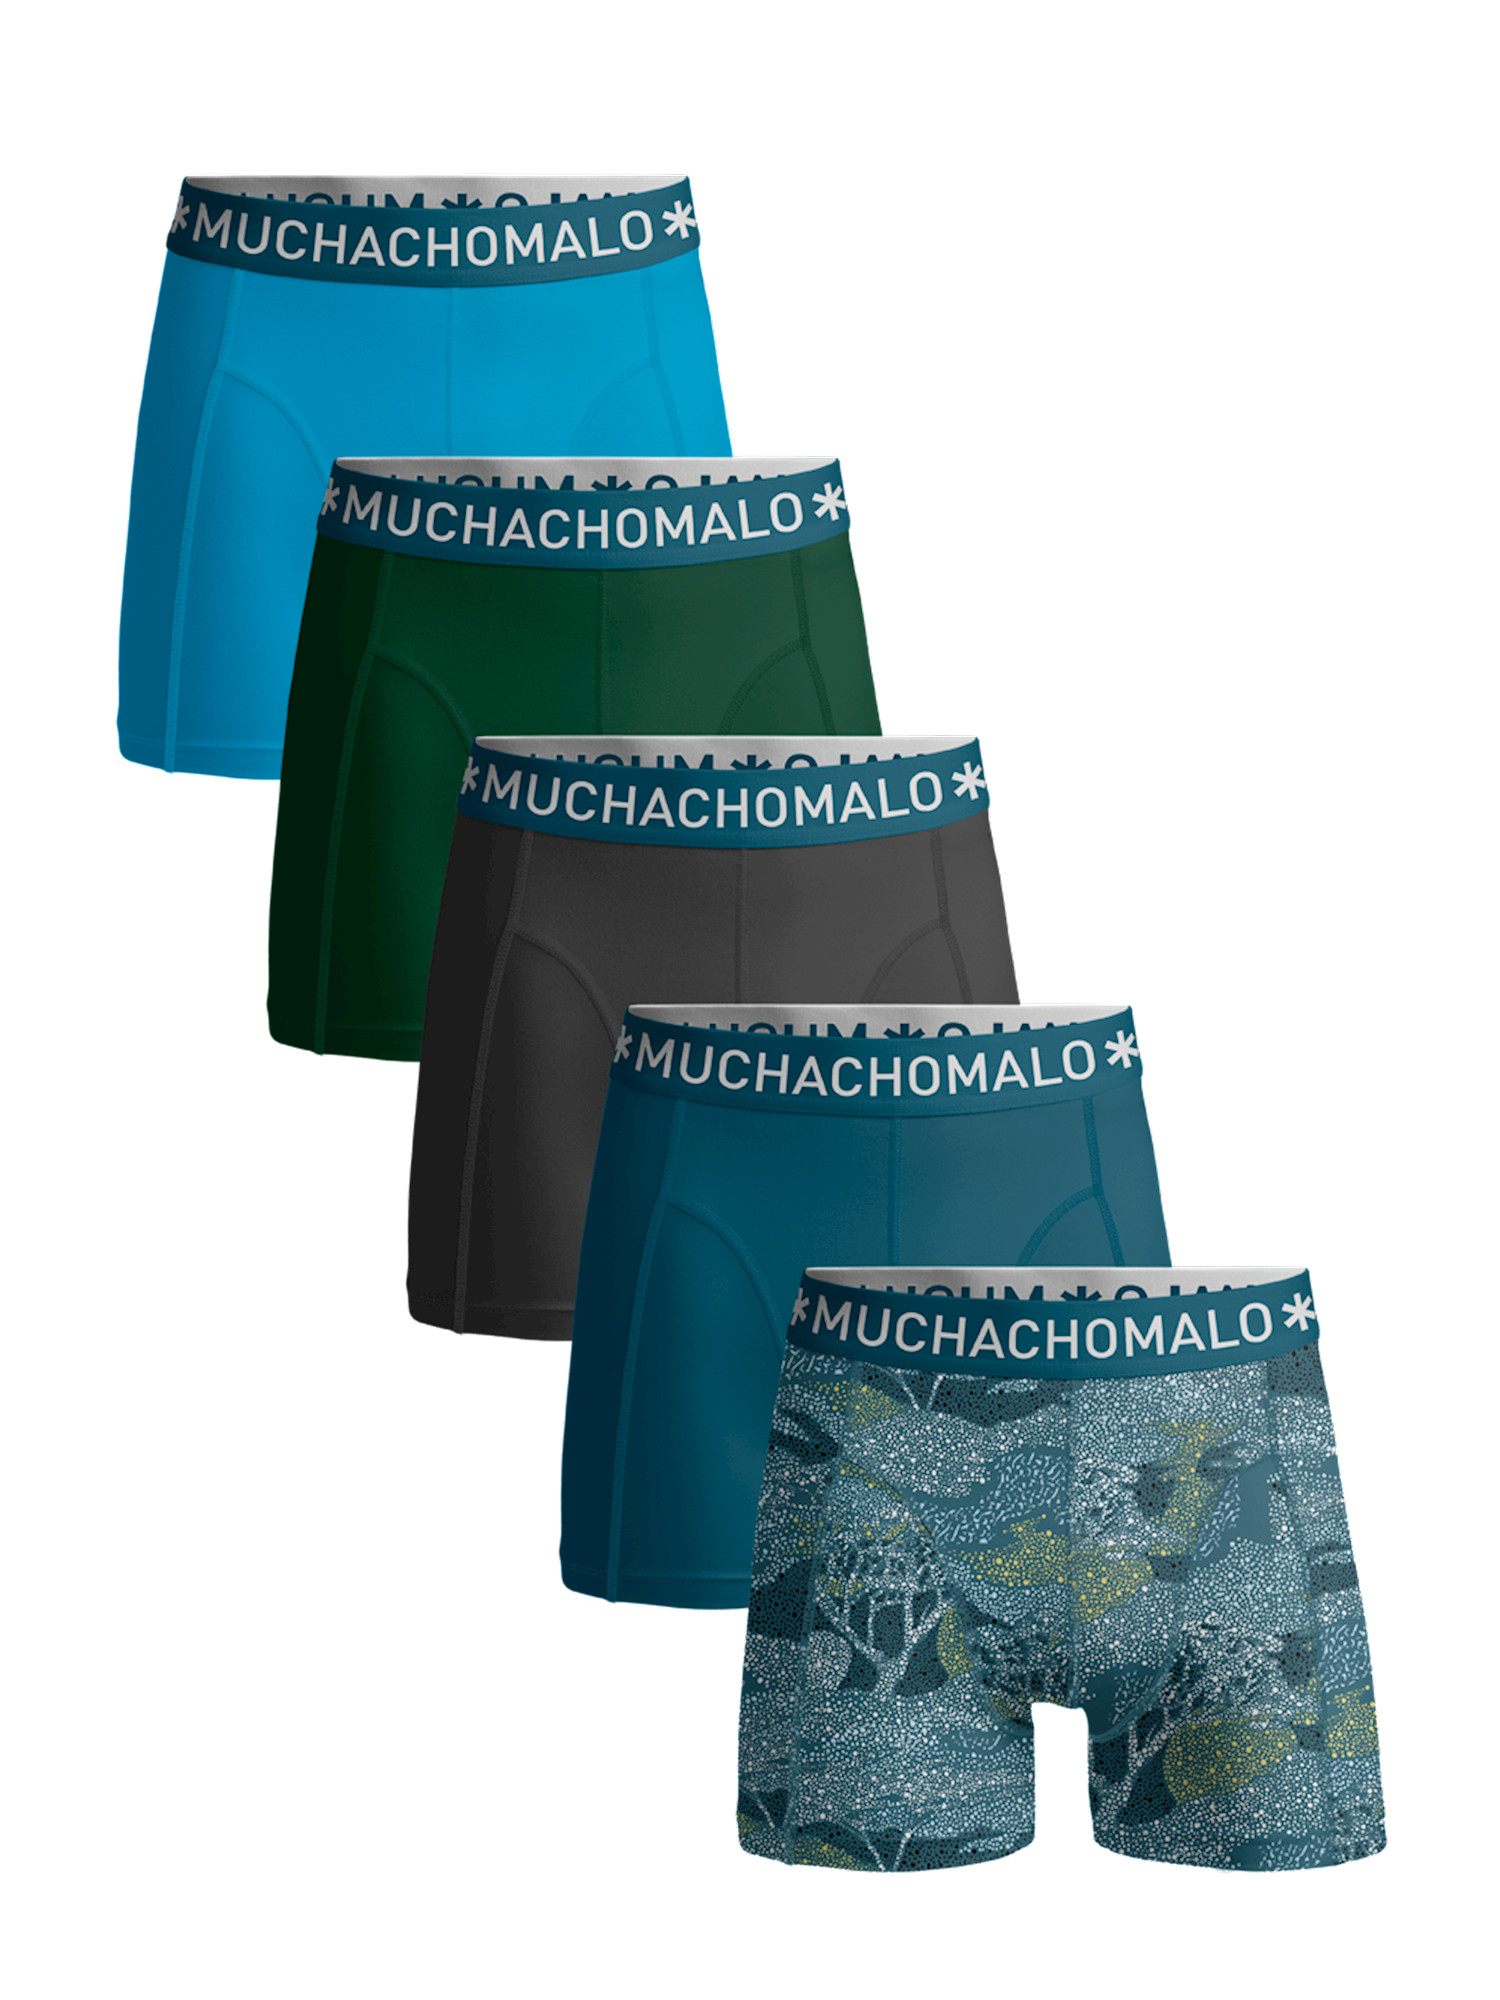 Afbeelding van Muchachomalo Heren 5-pack short /solid